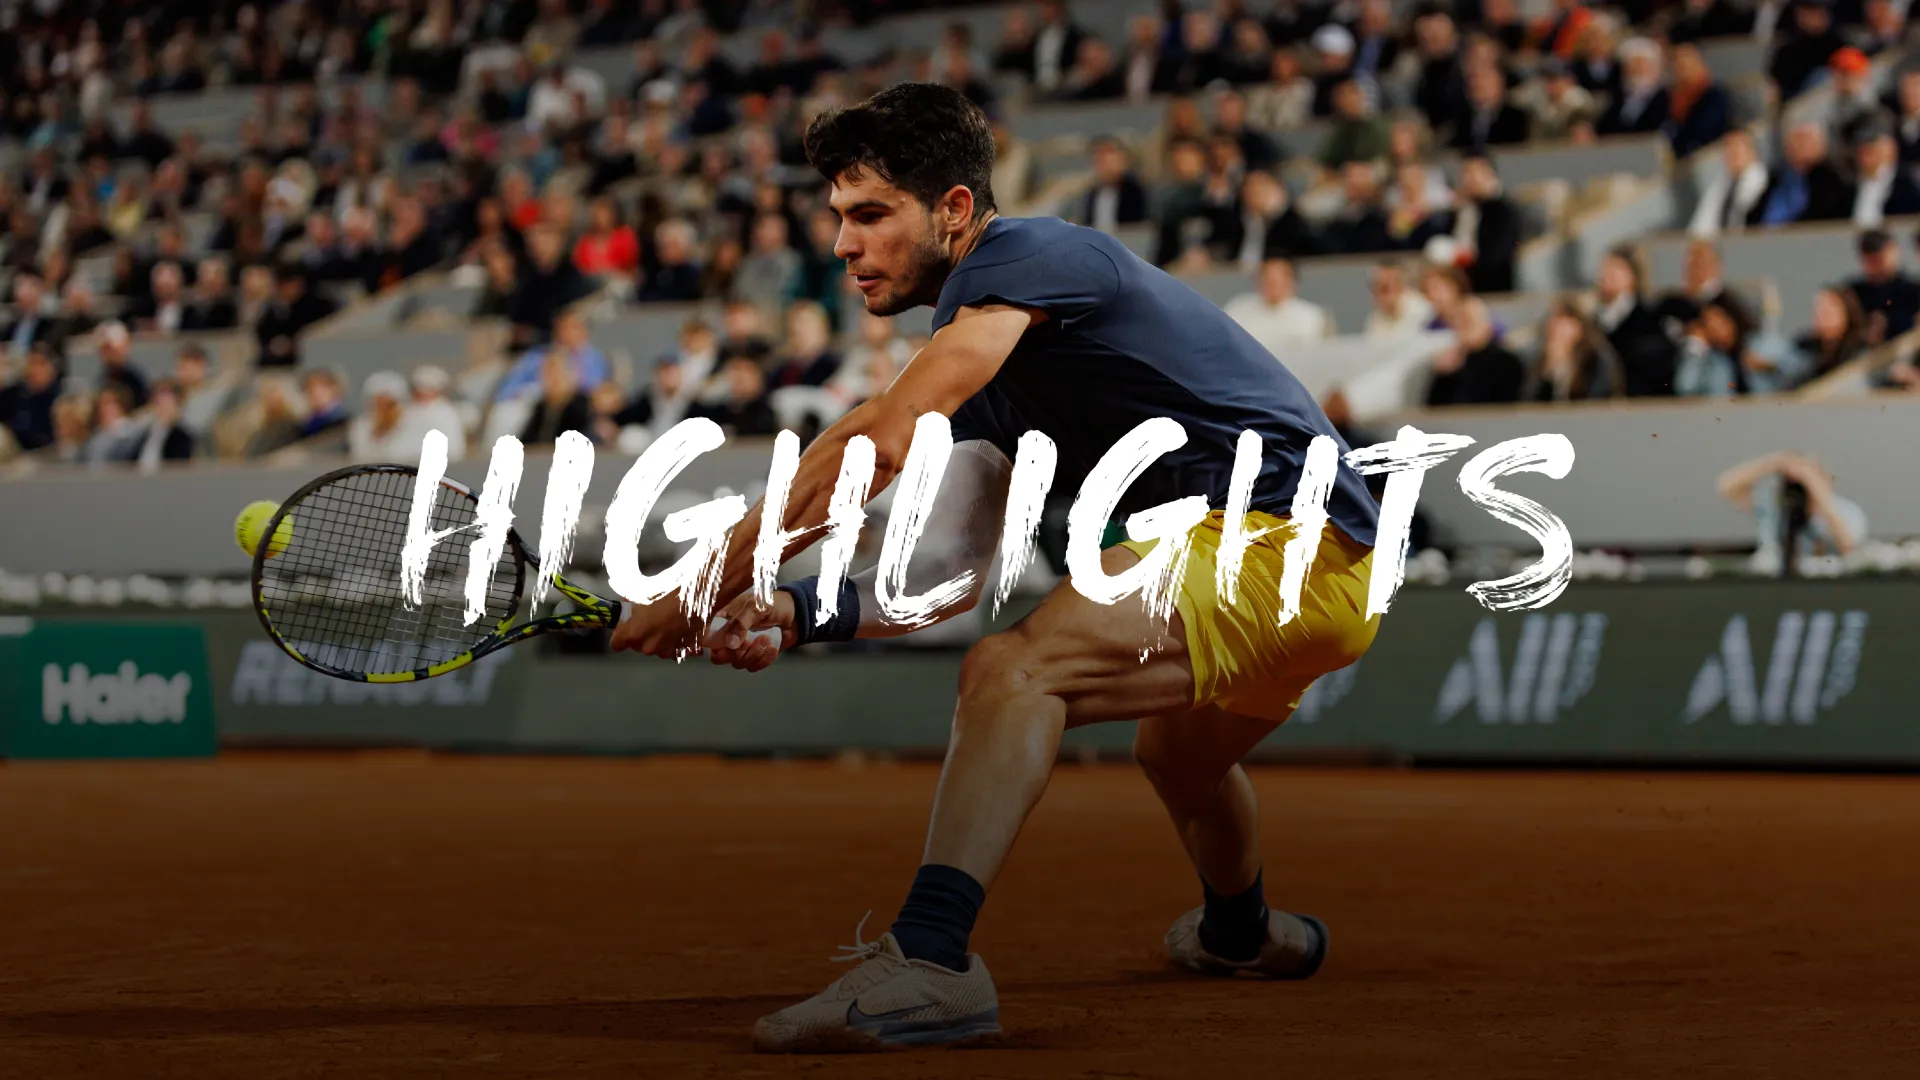 French Open: Alcaraz löst knifflige Aufgabe mit Bravour - Highlights